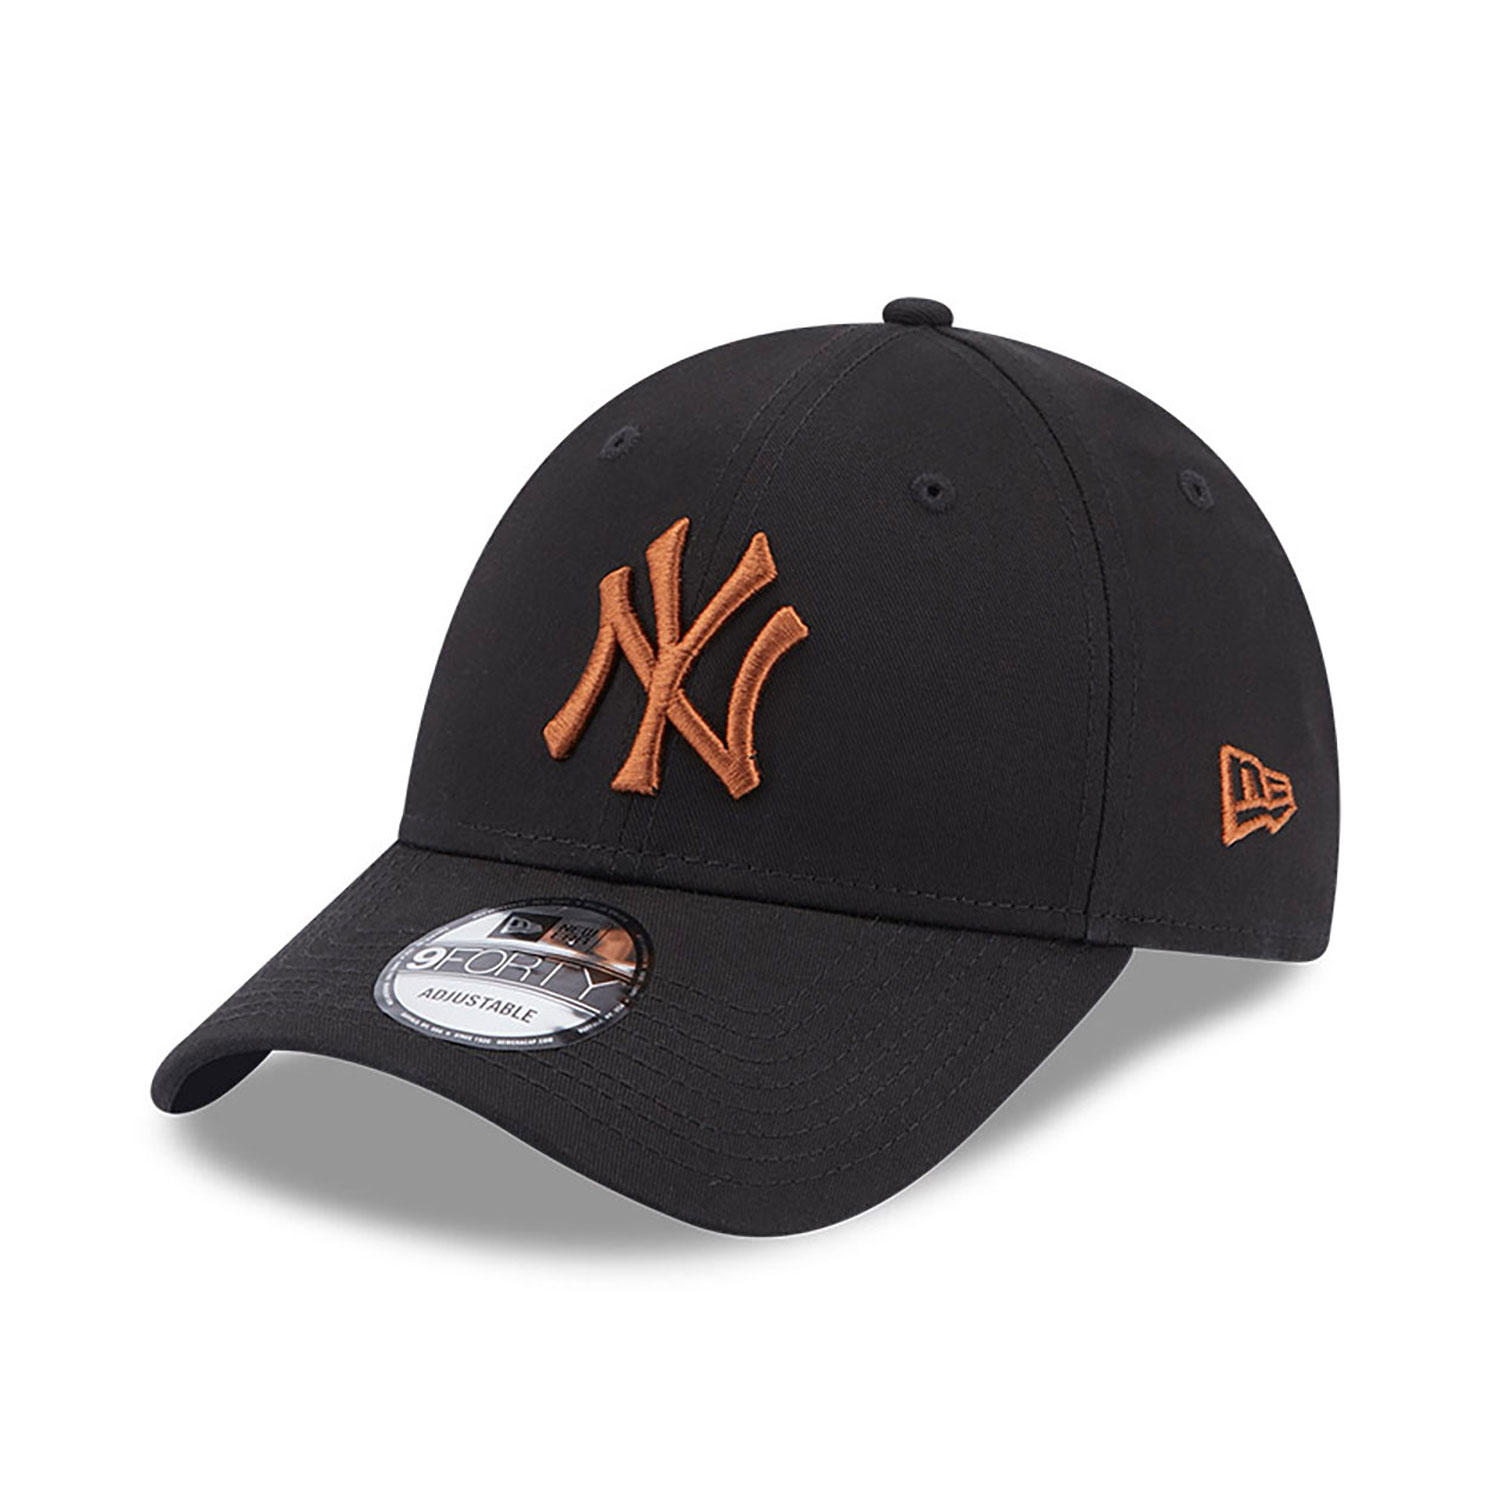 NY Cap Black | Black Yankees Cap | New Era Cap BE